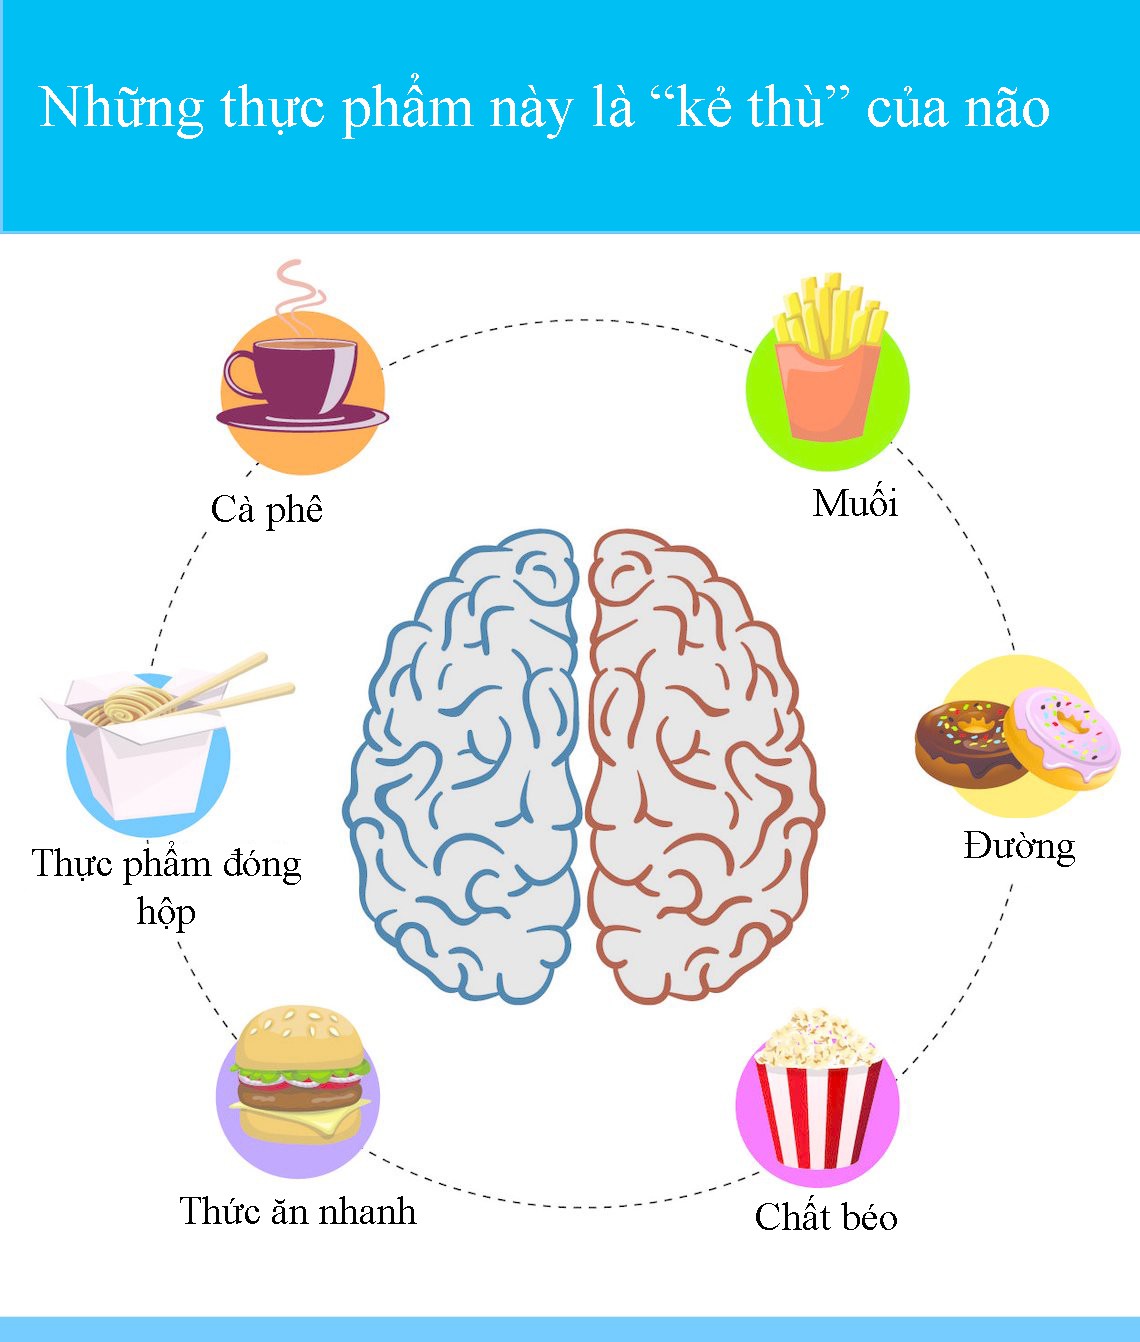 10 thực phẩm bổ não, tăng cường trí nhớ - 'vị cứu tinh' dành riêng cho trẻ sắp vào lớp 1 - Ảnh 10